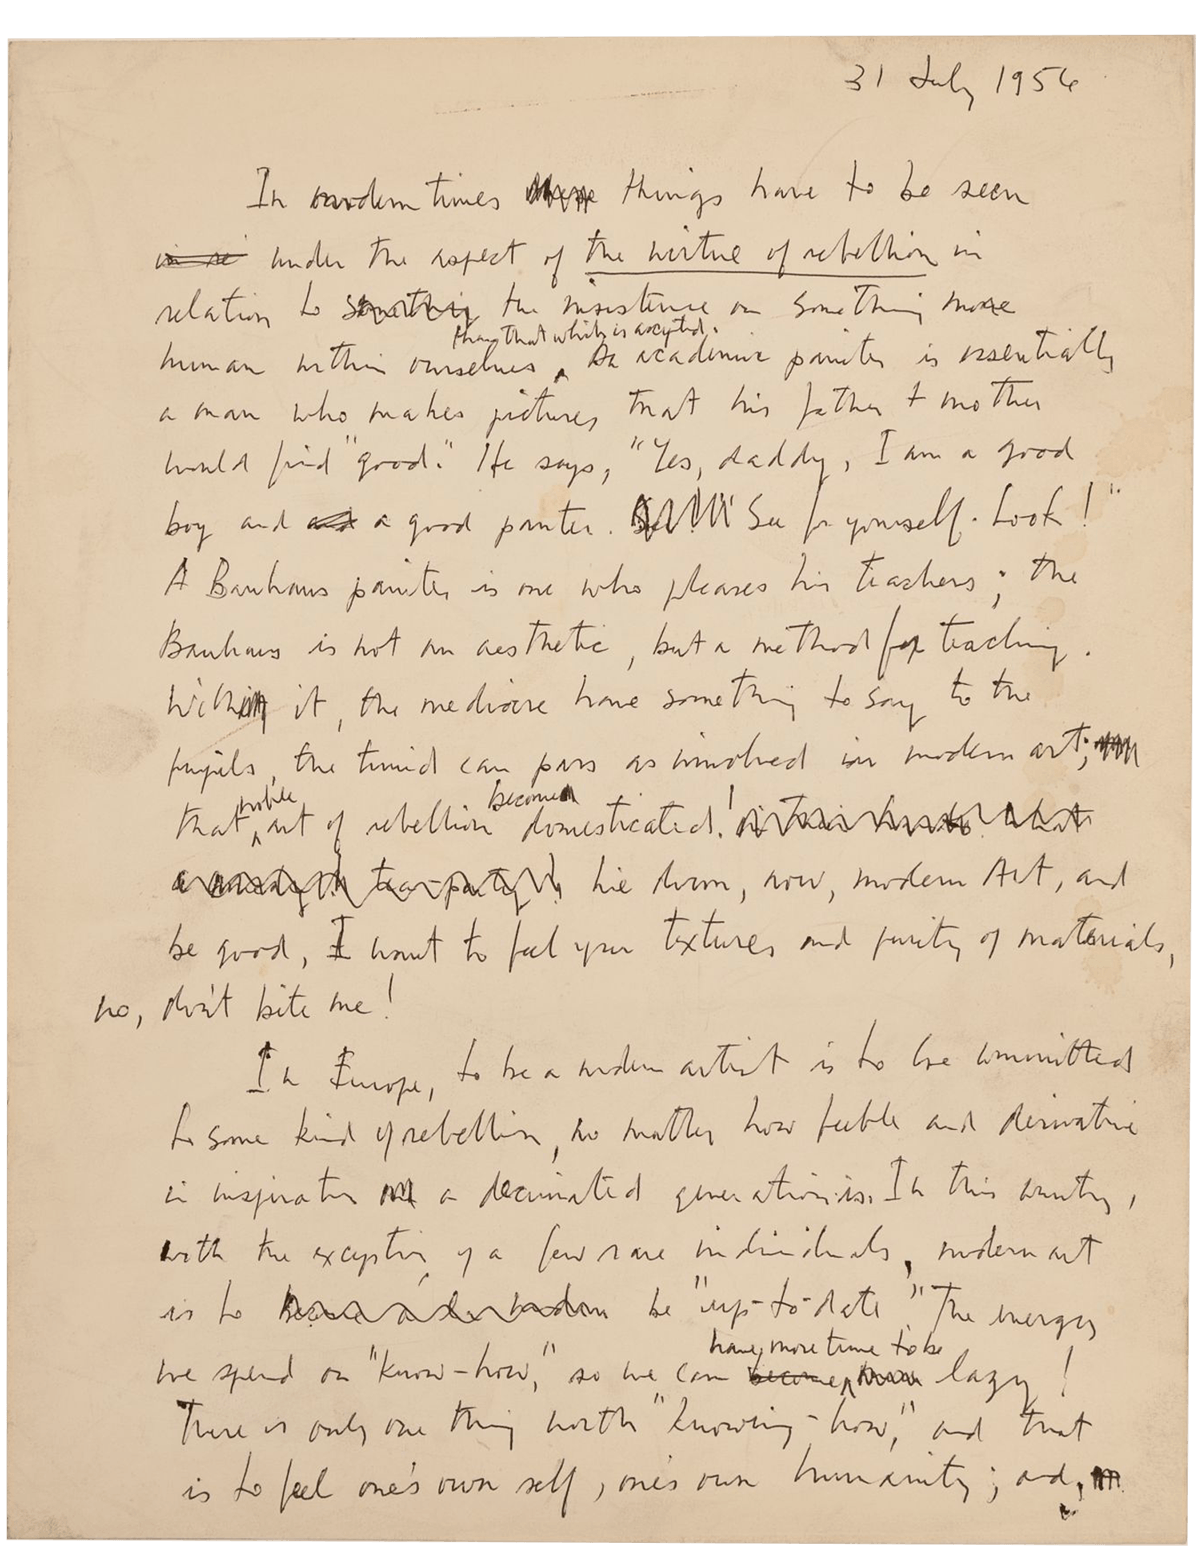 A handwritten manuscript from 1956